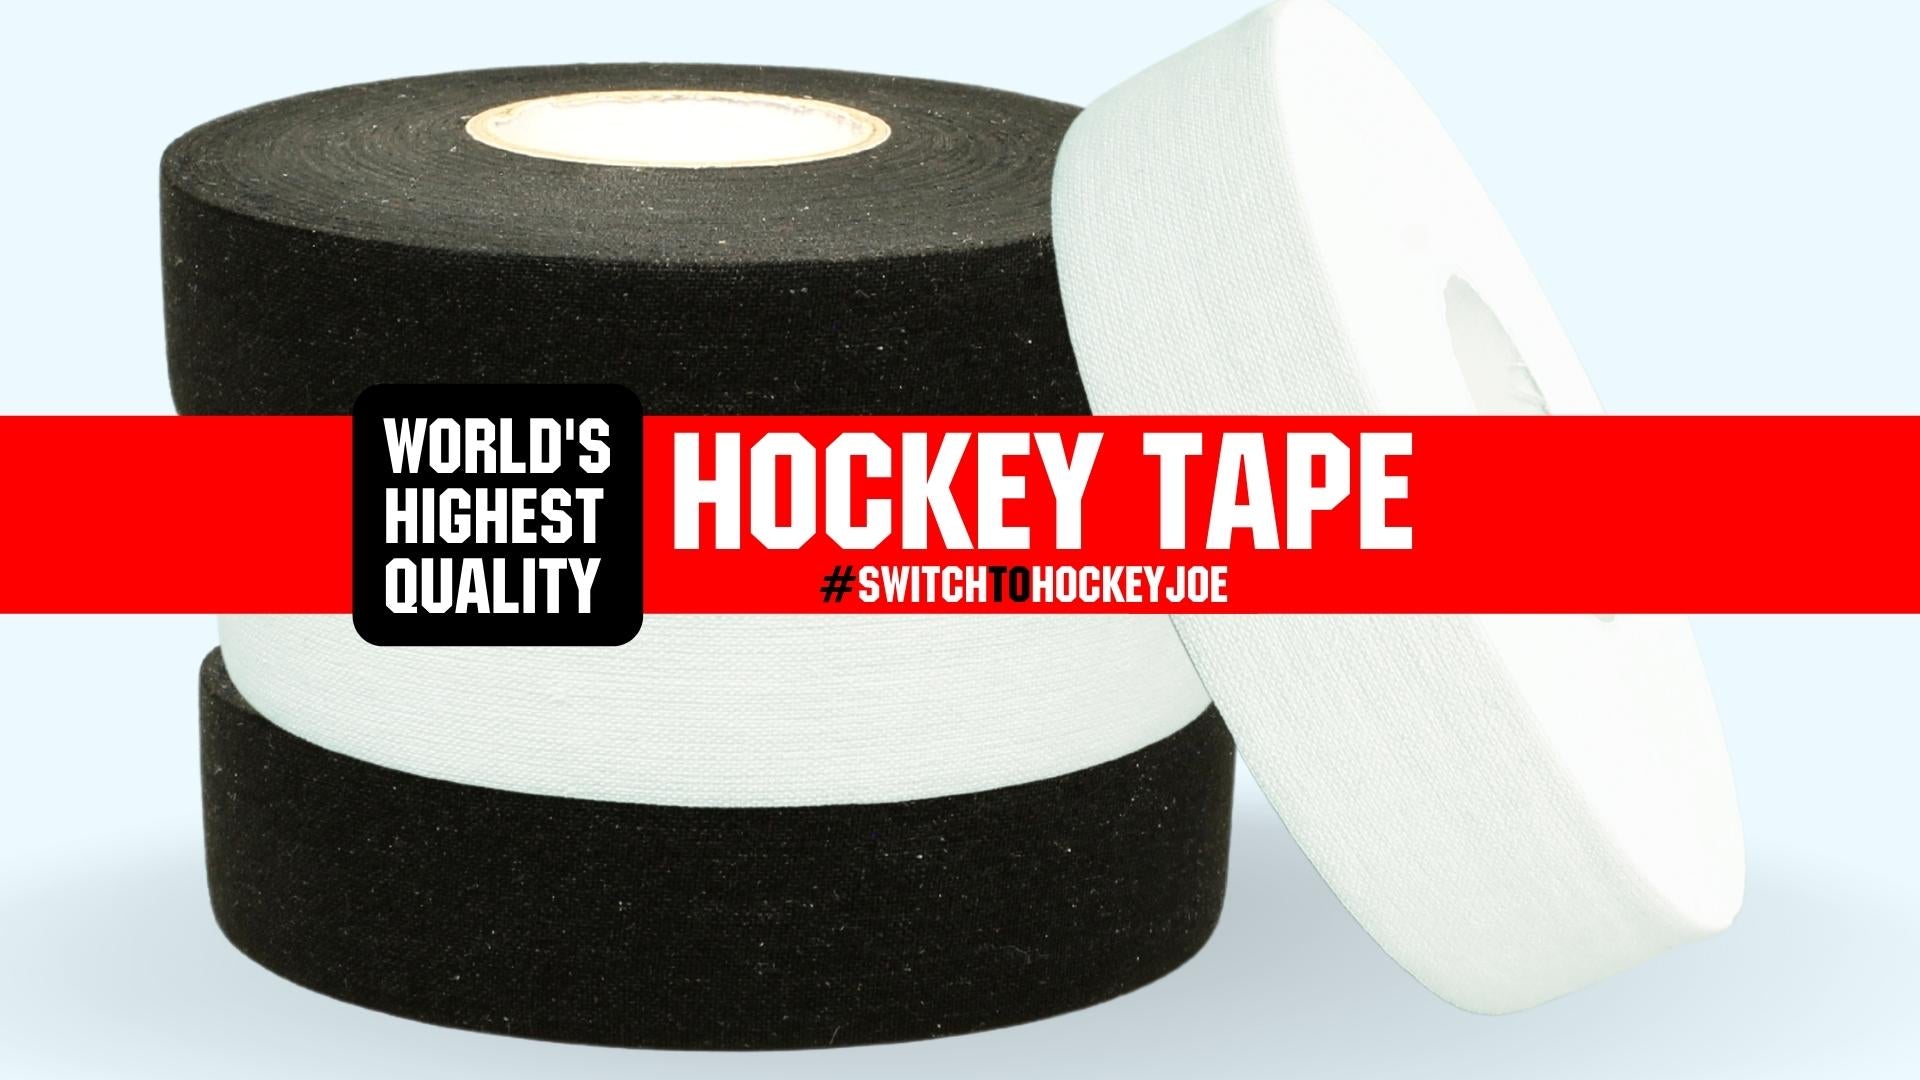 Free Hockey Tape and Joe on Social